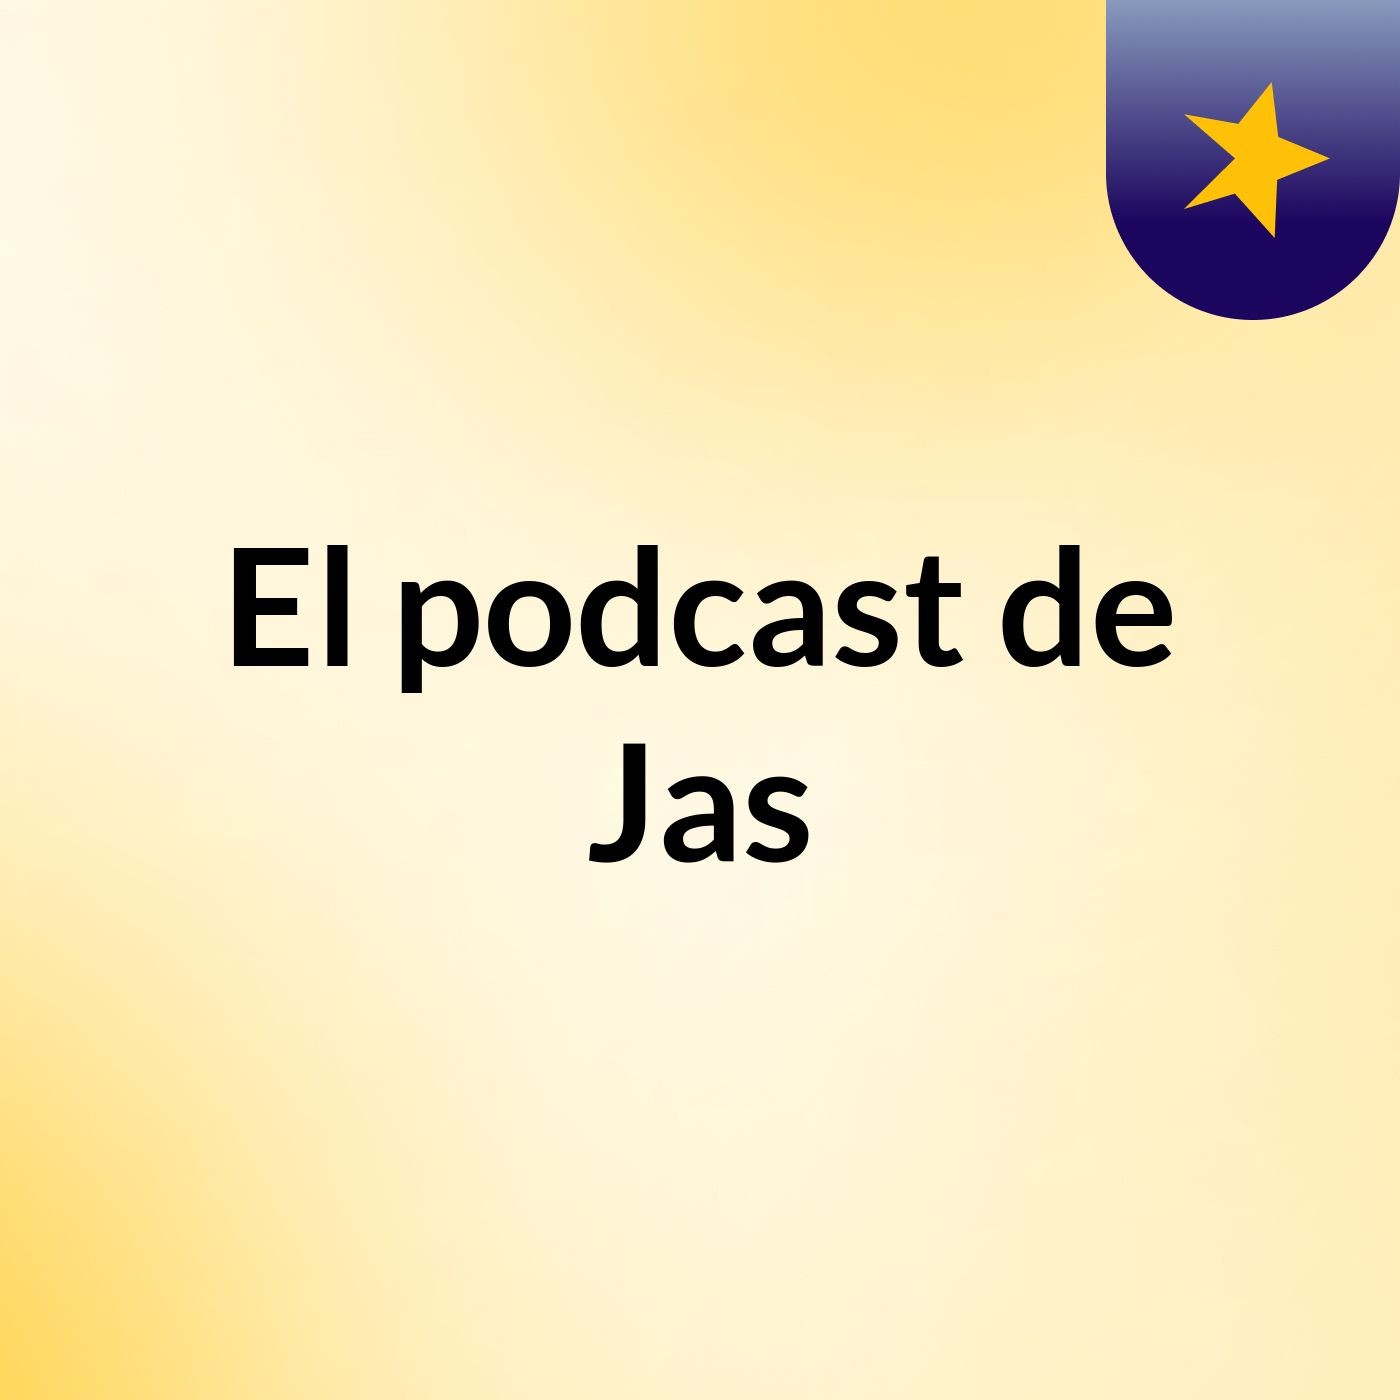 El podcast de Jas